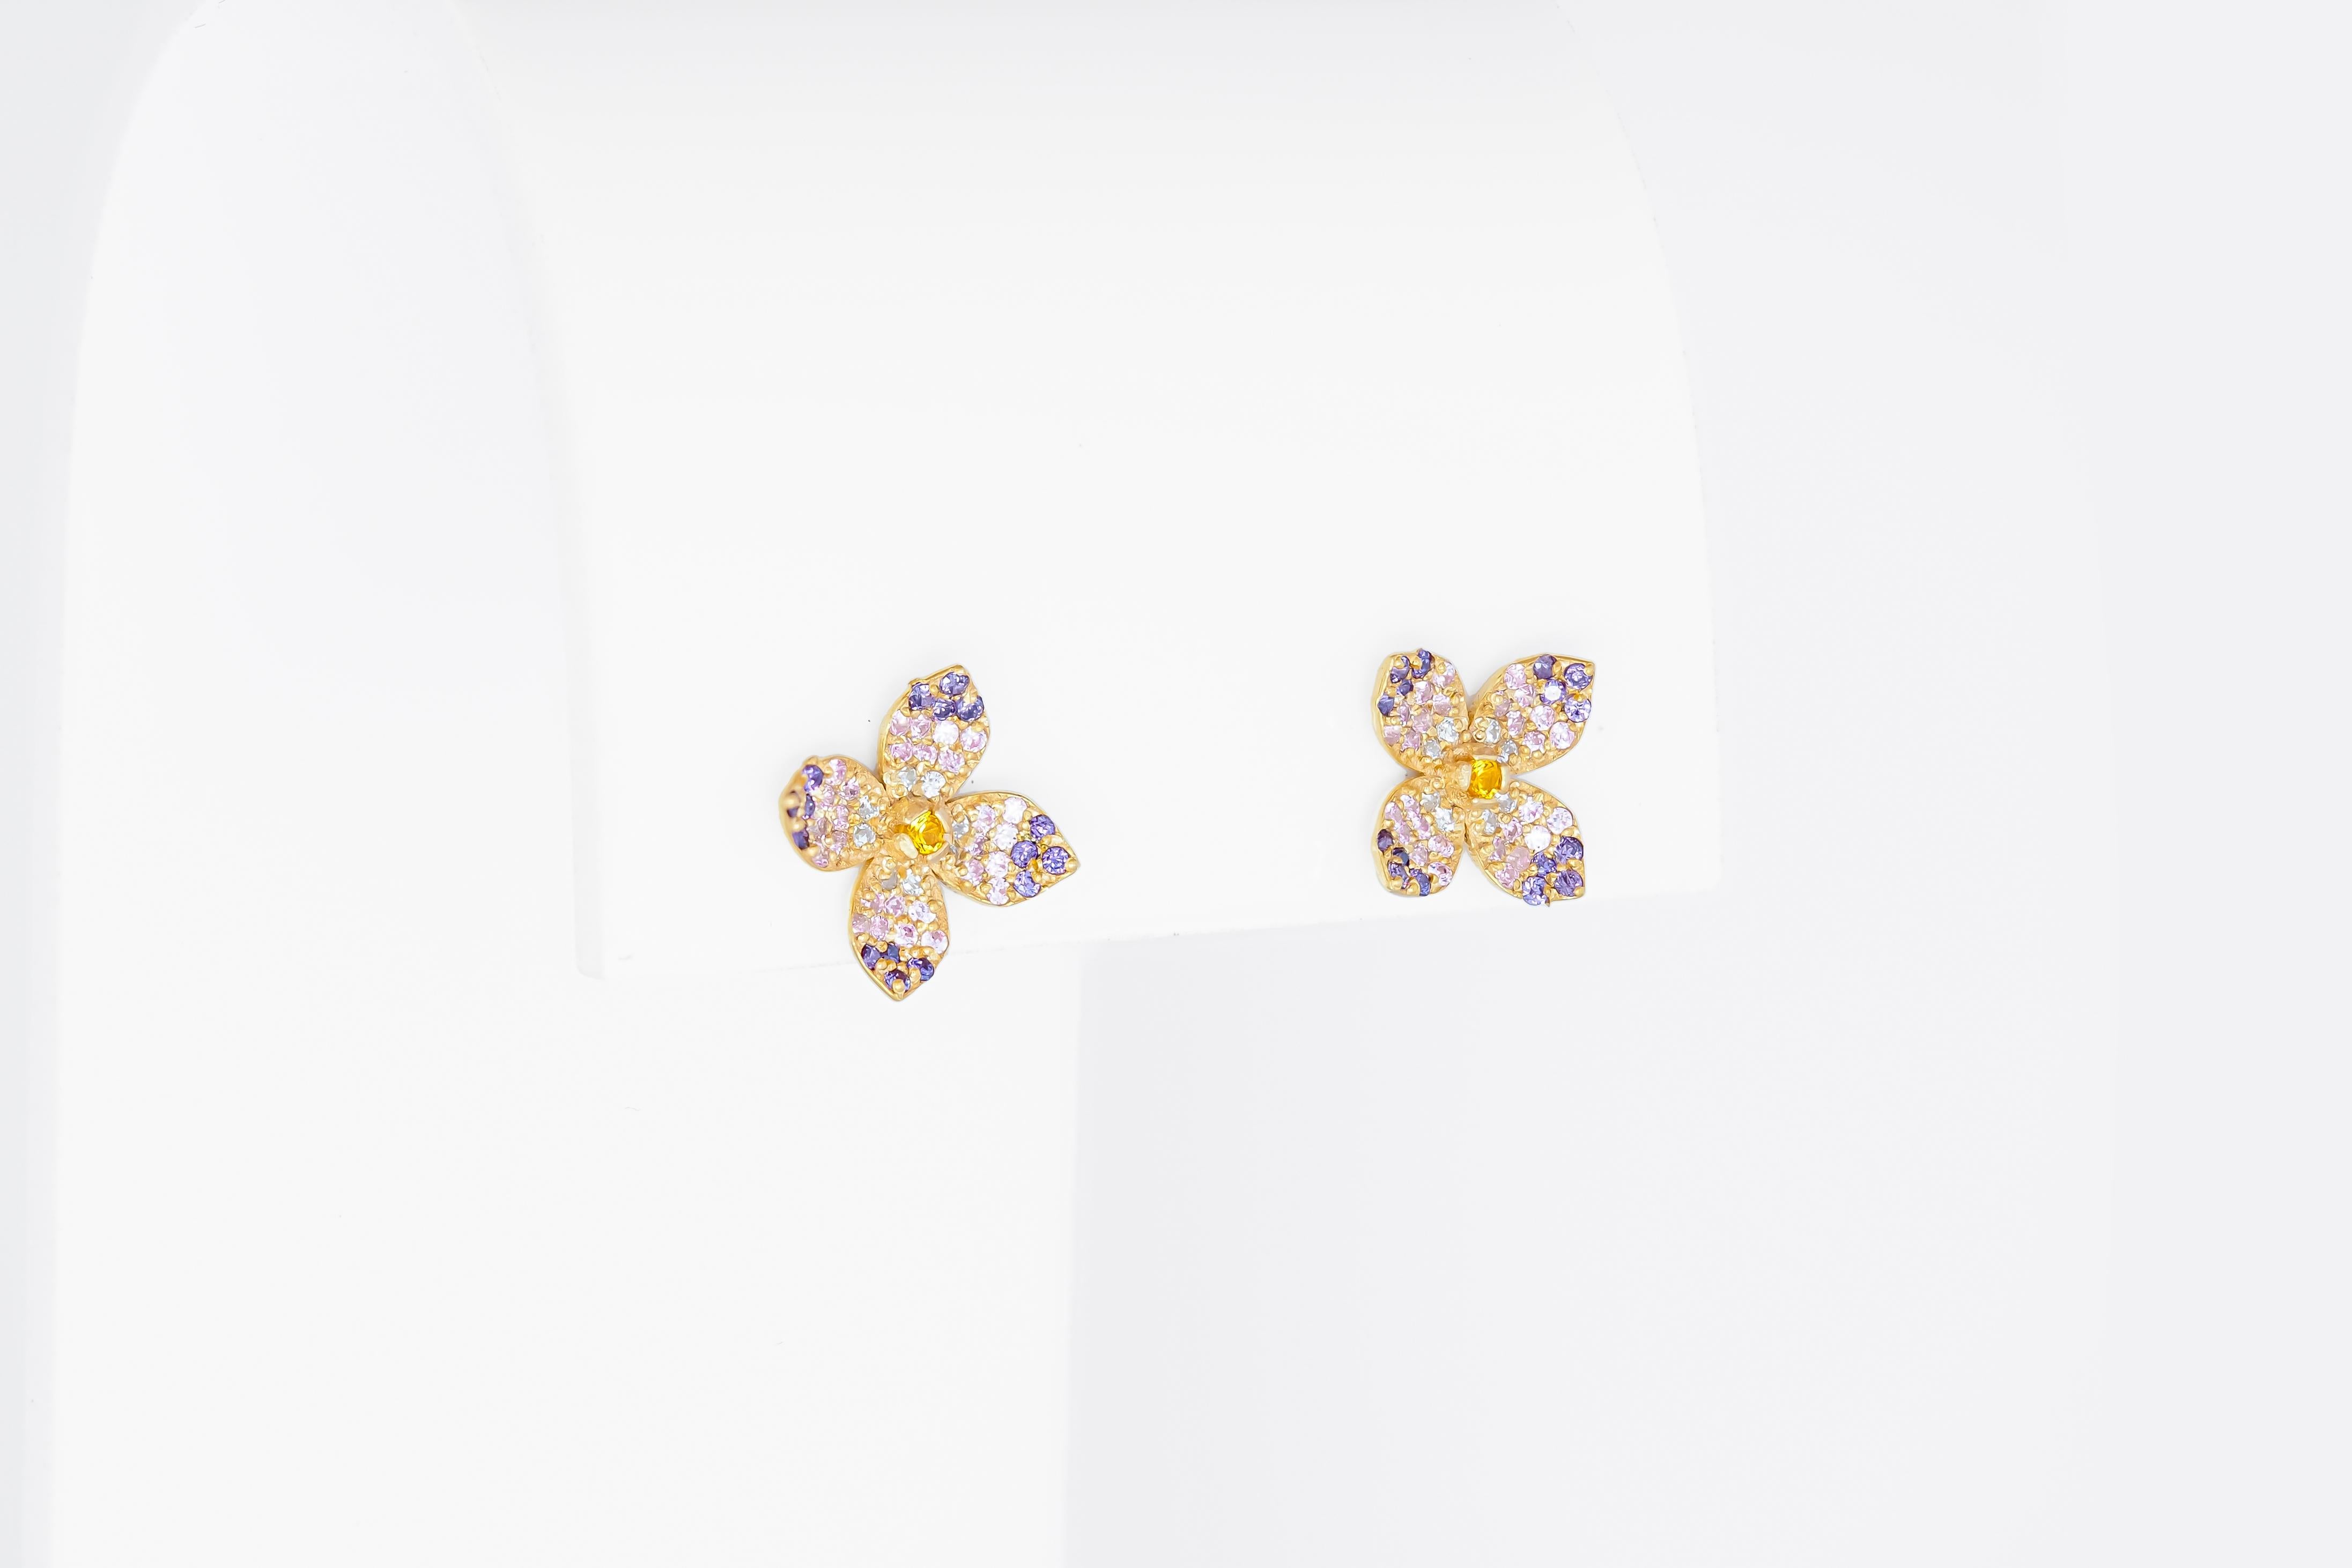 Round Cut Flower earrings studs in 14k gold. 